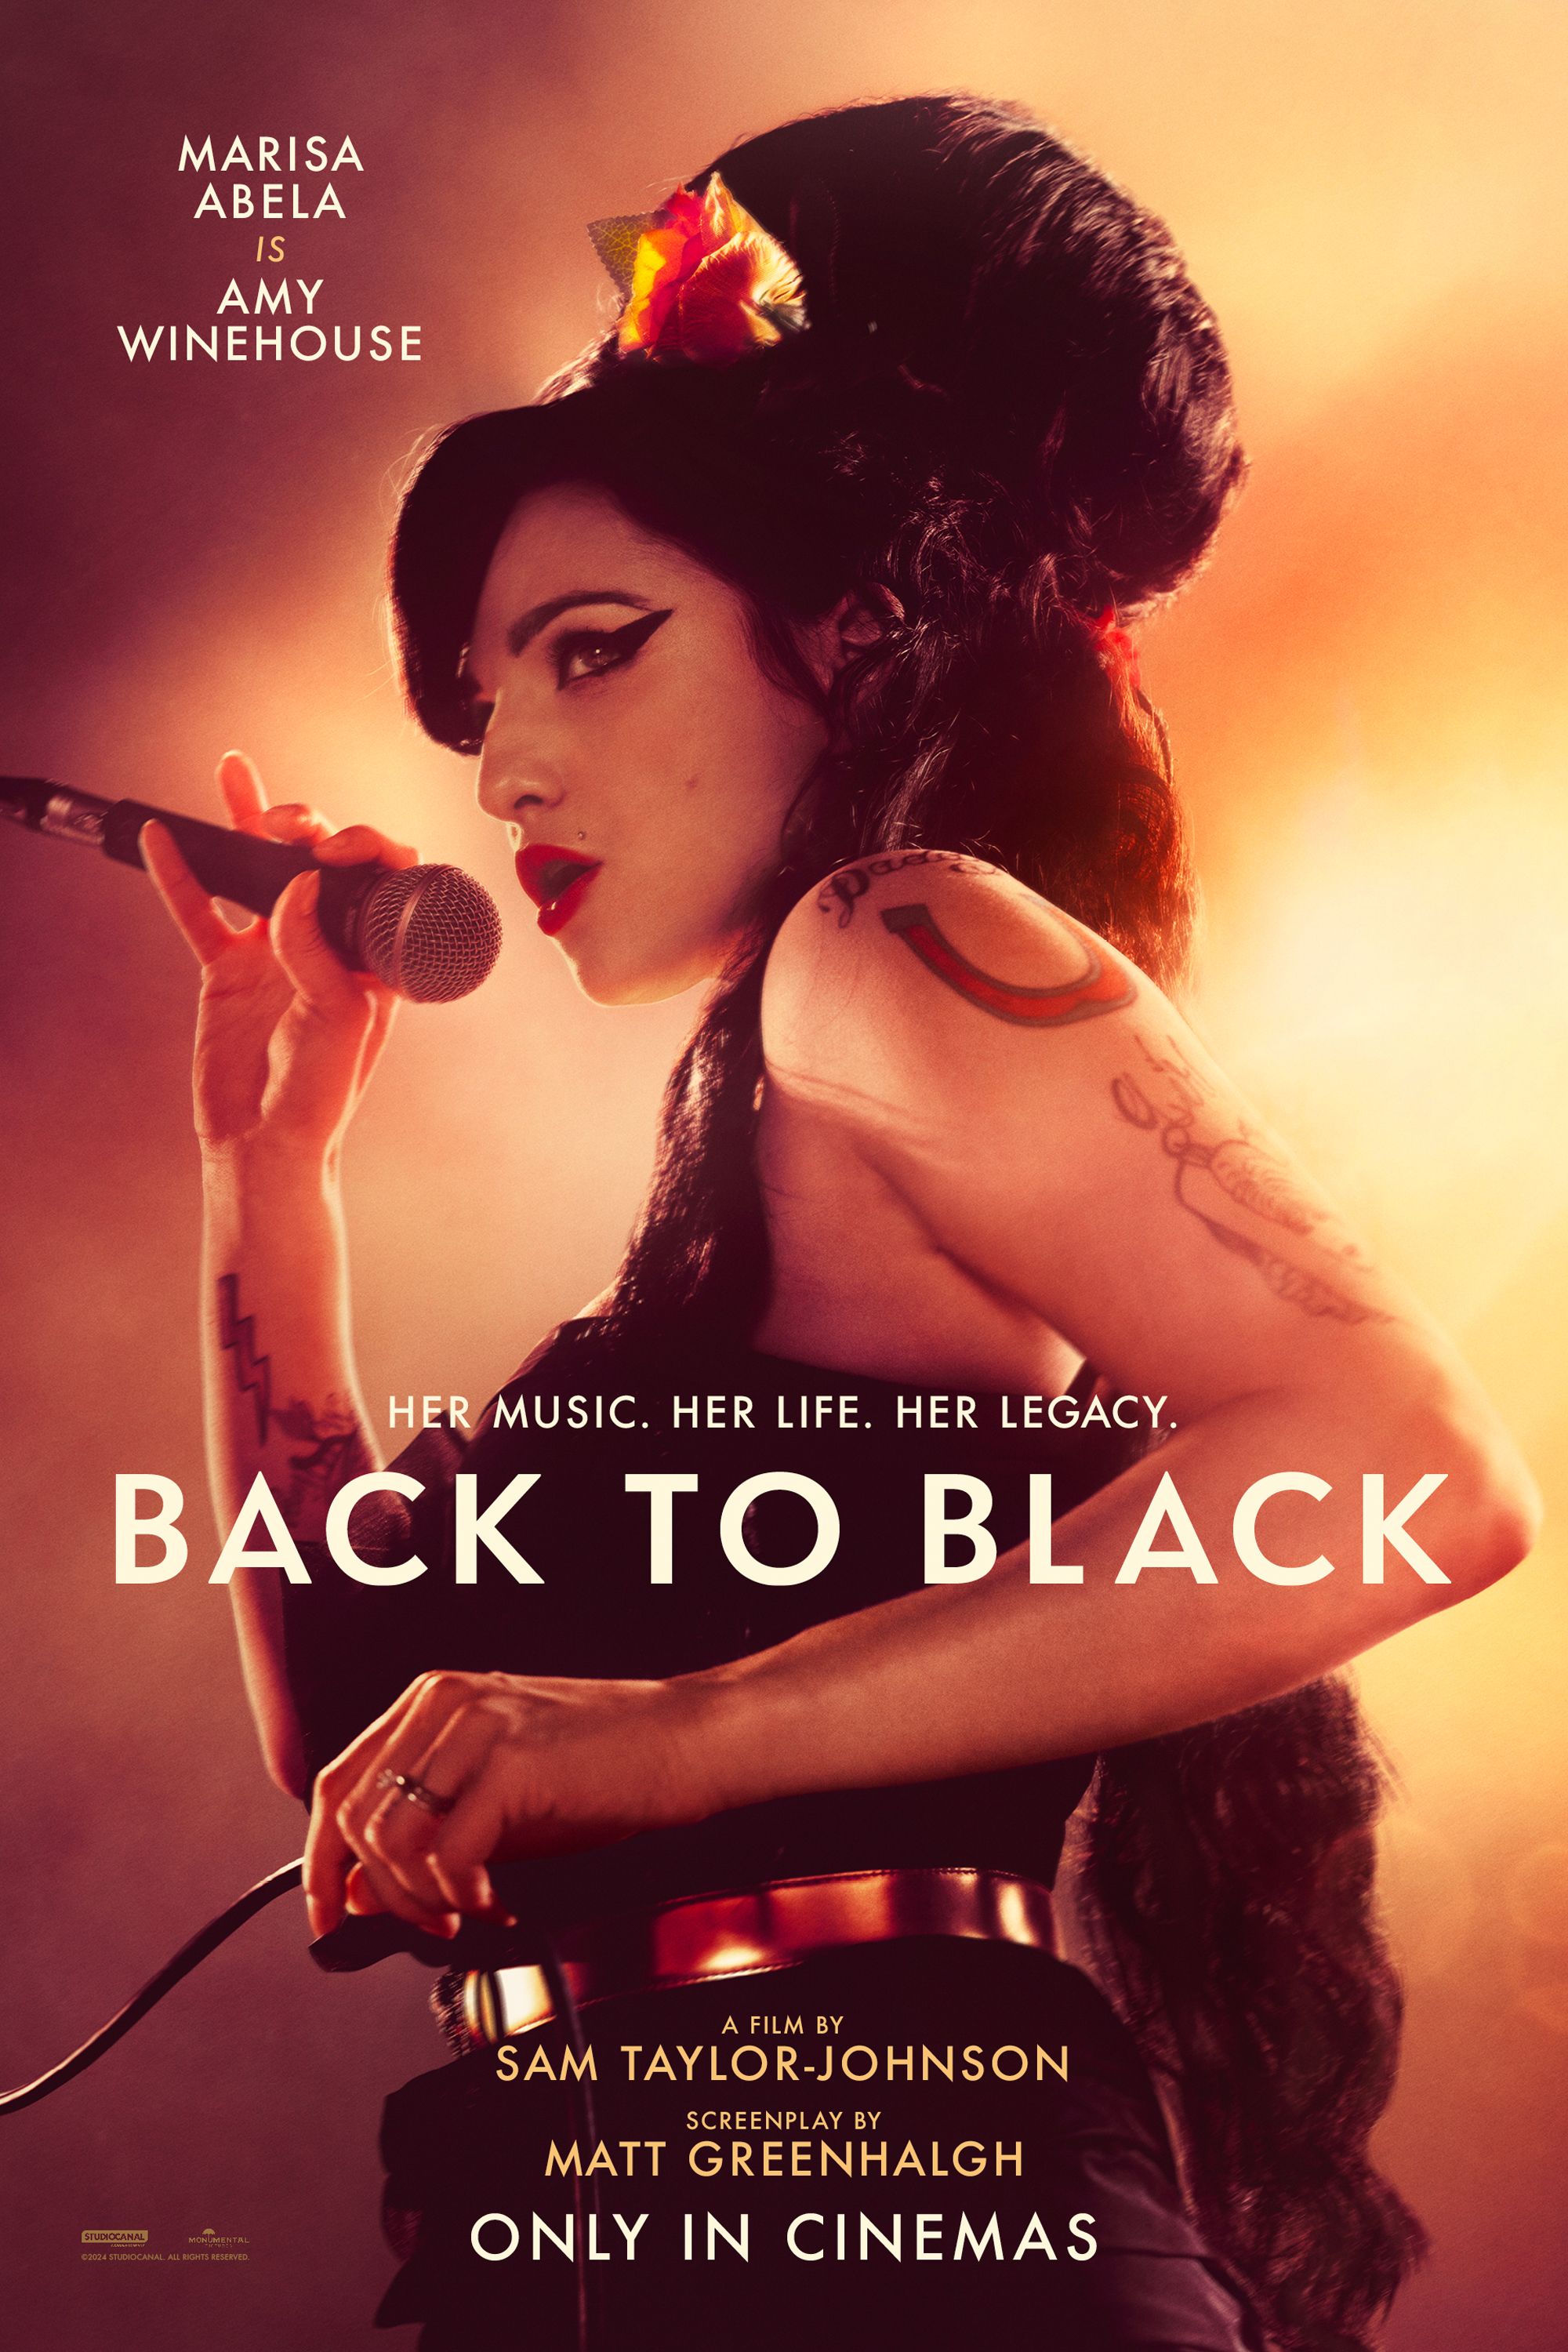 De vuelta al cartel de la película negra que muestra a Marissa Abella como Amy Winehouse sosteniendo un micrófono